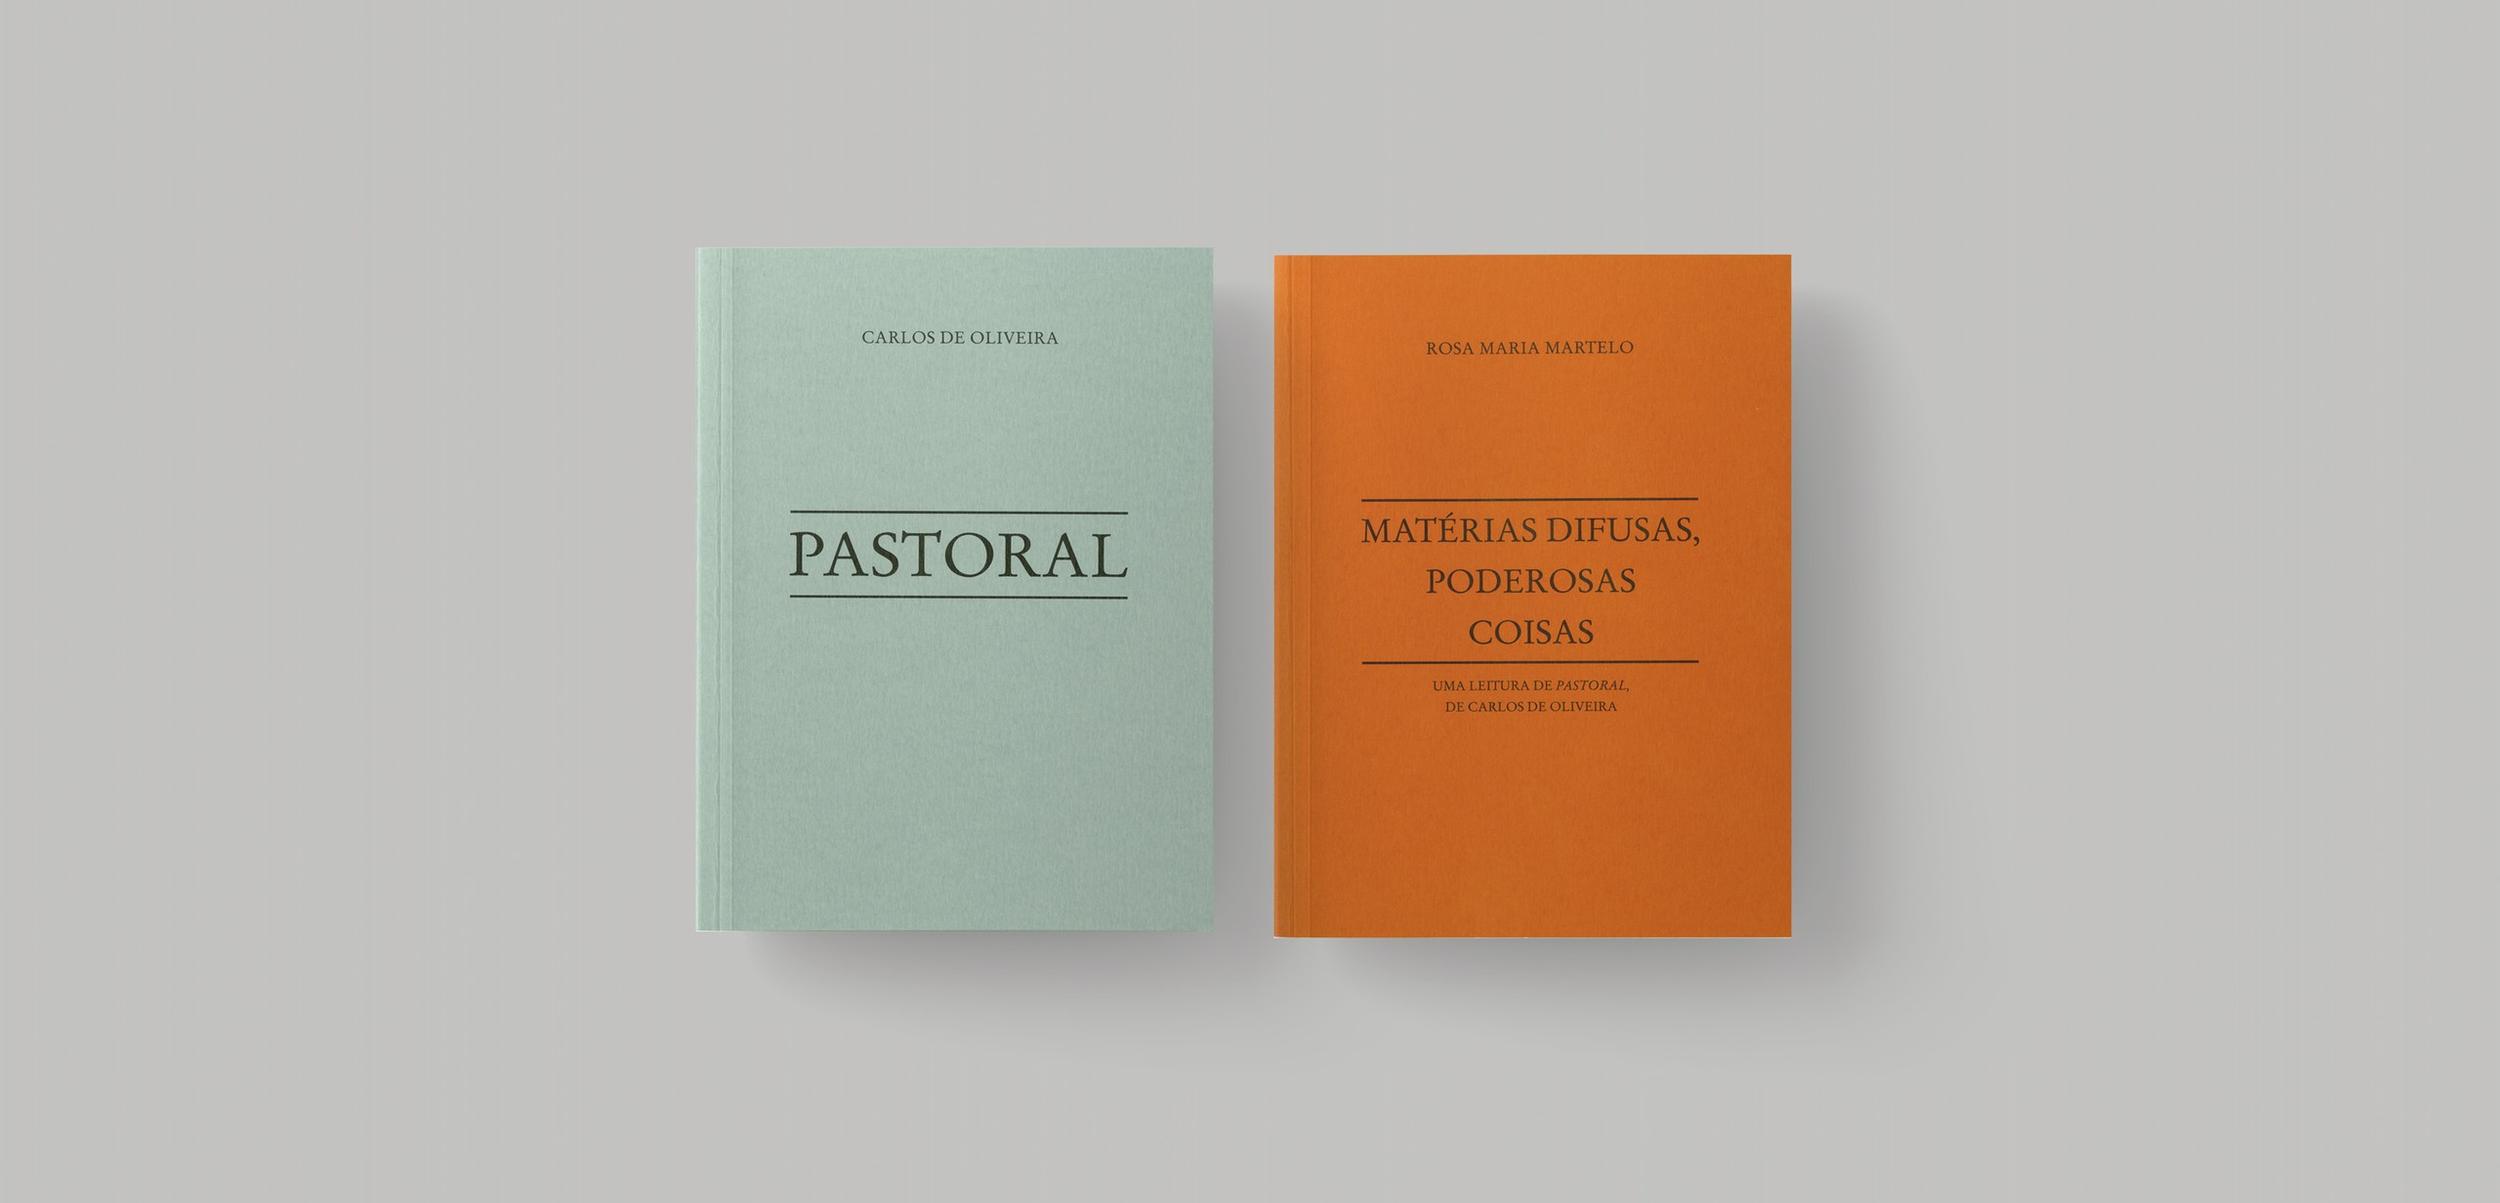 Apresentação dos livros “Pastoral”, de Carlos Oliveira, e “Matérias Difusas, Poderosas Coisas”, d...